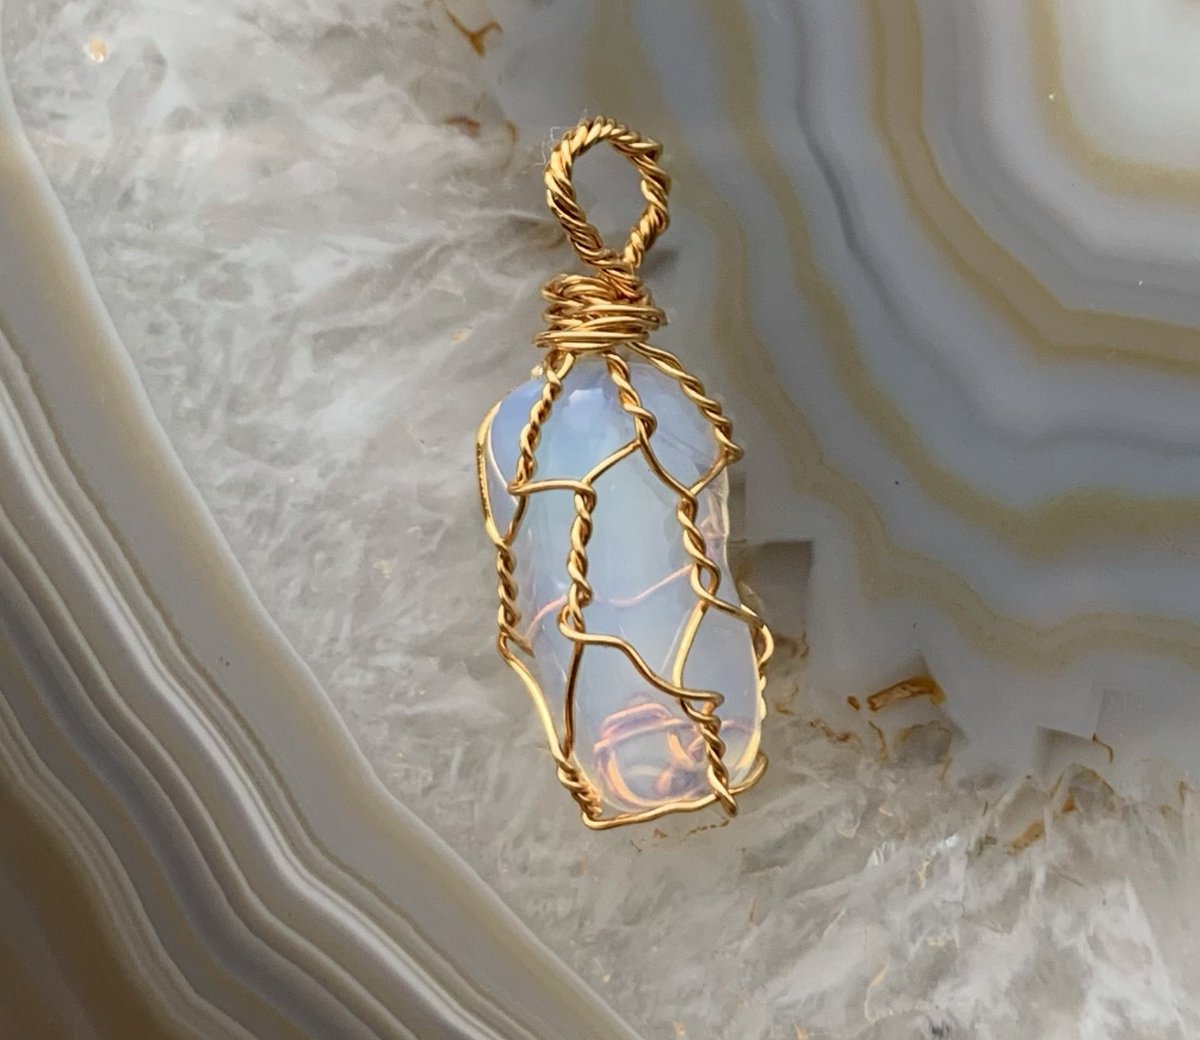 Edelsteen Hanger - Mini - Handgemaakt - Opaliet - Opalite - Goud - Gold - Crystal necklace